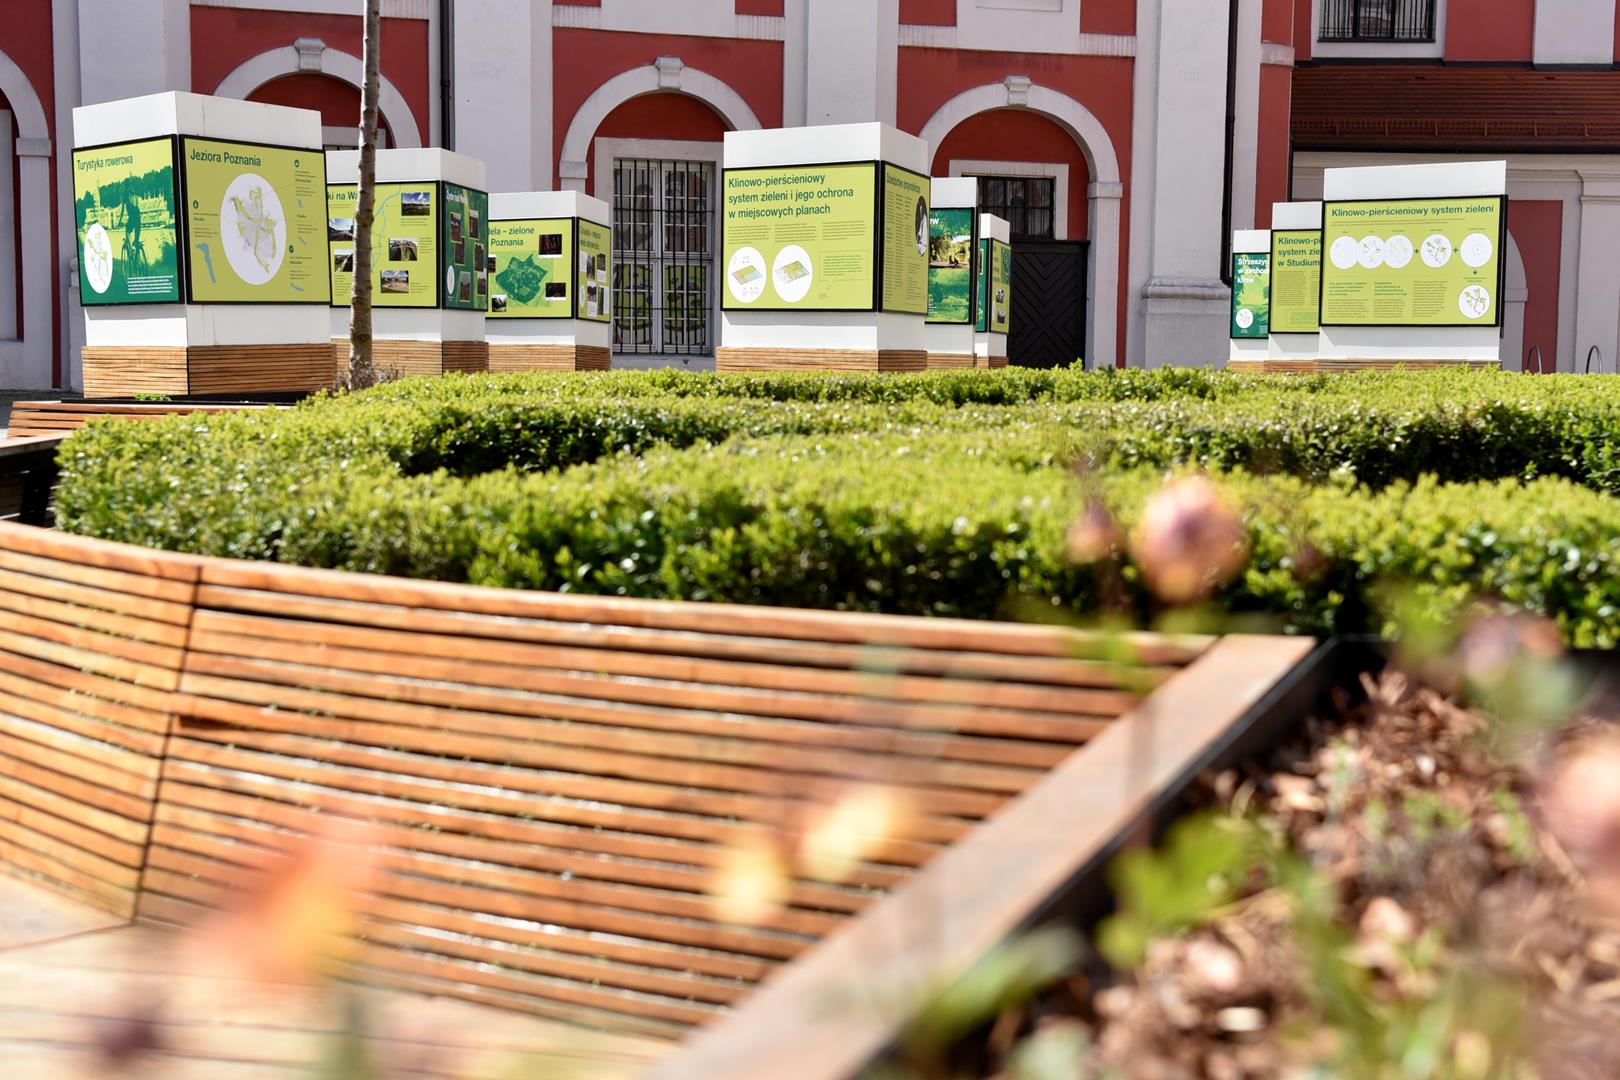 “Z natury rzeczy w Poznaniu”, czyli o klinach zieleni na wystawie plenerowej w centrum miasta